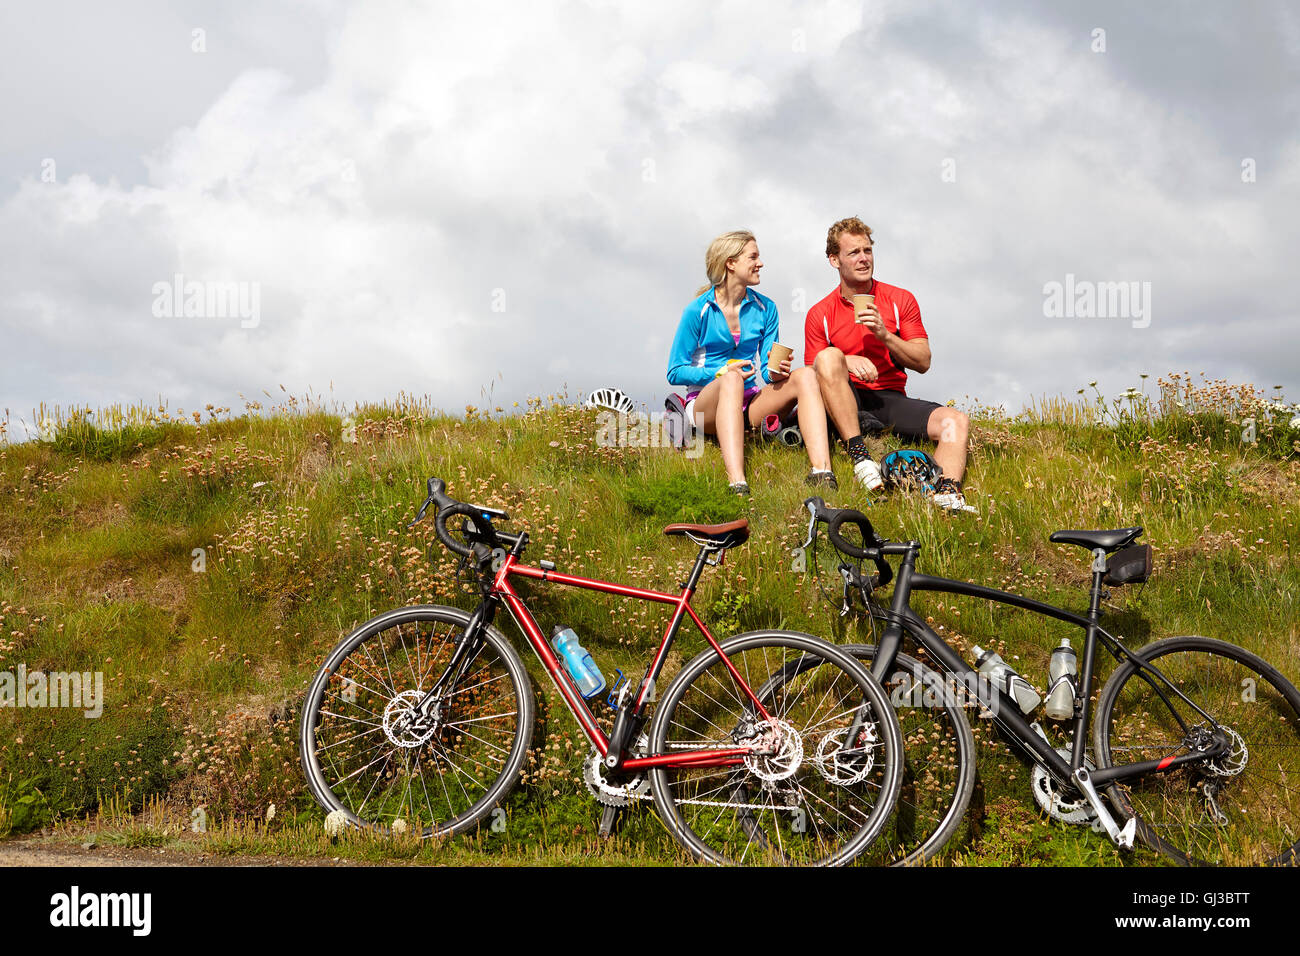 Los ciclistas relajarse y charlar en la cima de la colina de hierba Foto de stock